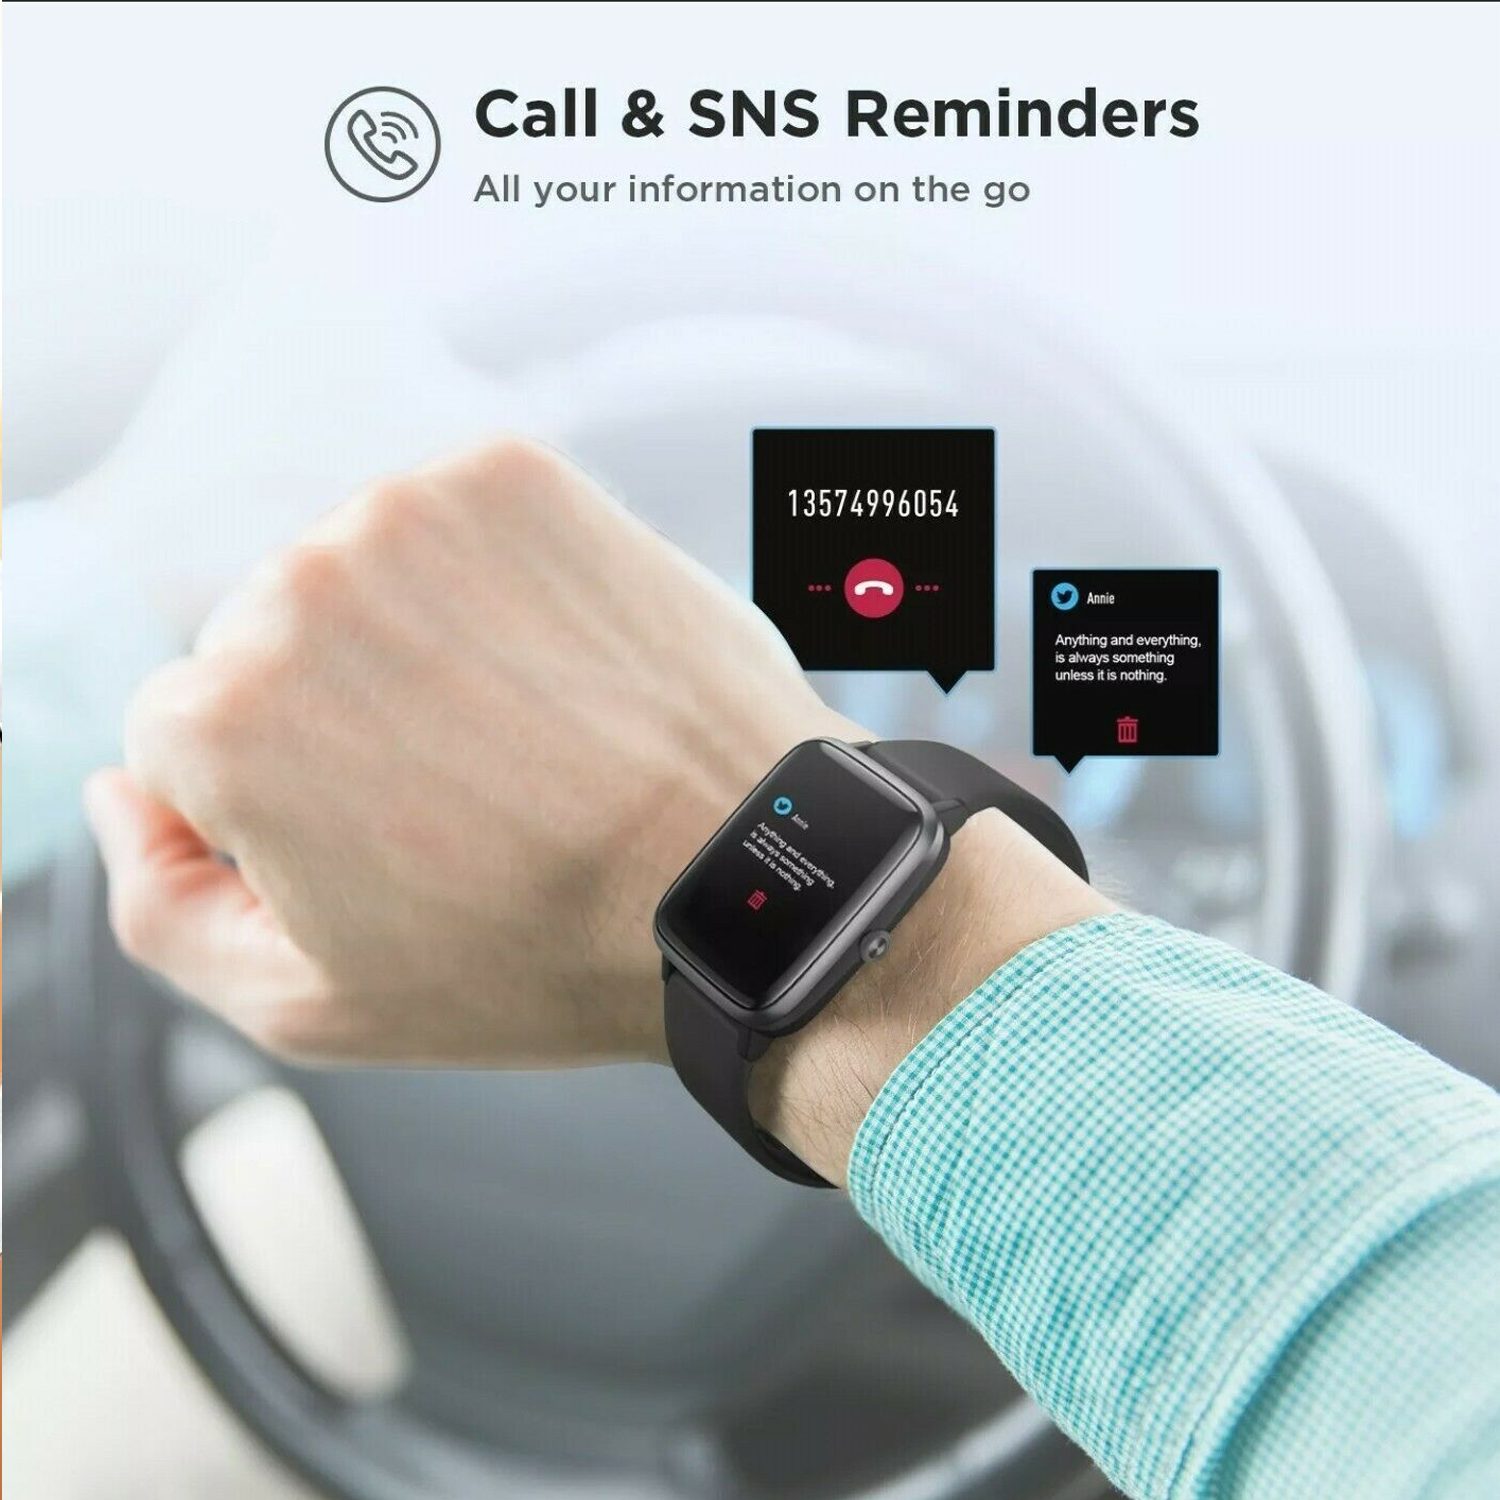 BRIGHTAKE FitnessPro ID205L aktives Fitnessverfolgung für Präzise rosa Smartwatch Silikon, Ihr Leben! – Smartwatch